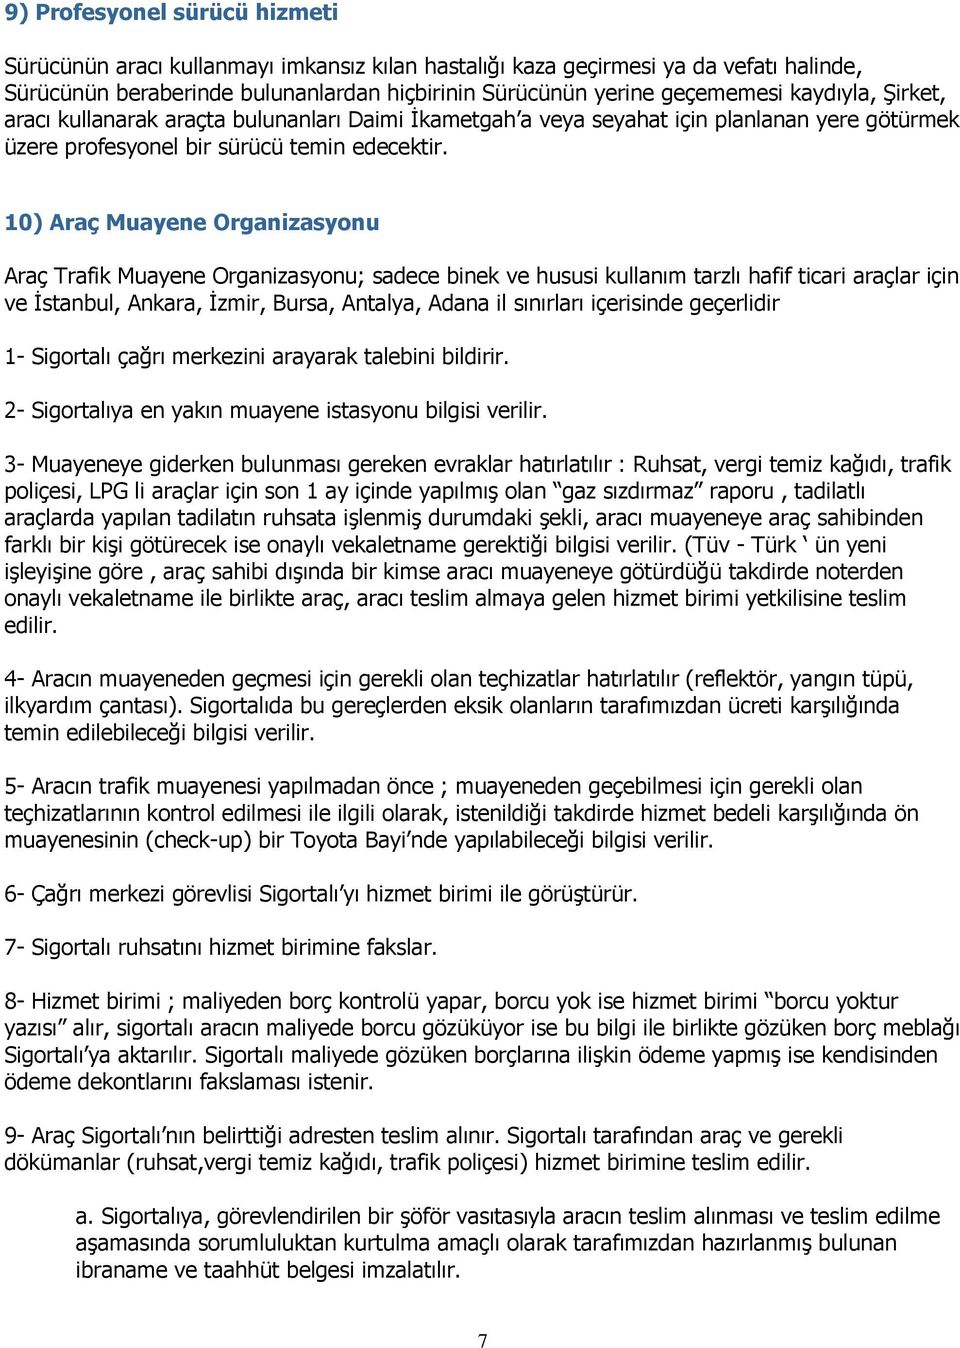 10) Araç Muayene Organizasyonu Araç Trafik Muayene Organizasyonu; sadece binek ve hususi kullanım tarzlı hafif ticari araçlar için ve Ġstanbul, Ankara, Ġzmir, Bursa, Antalya, Adana il sınırları